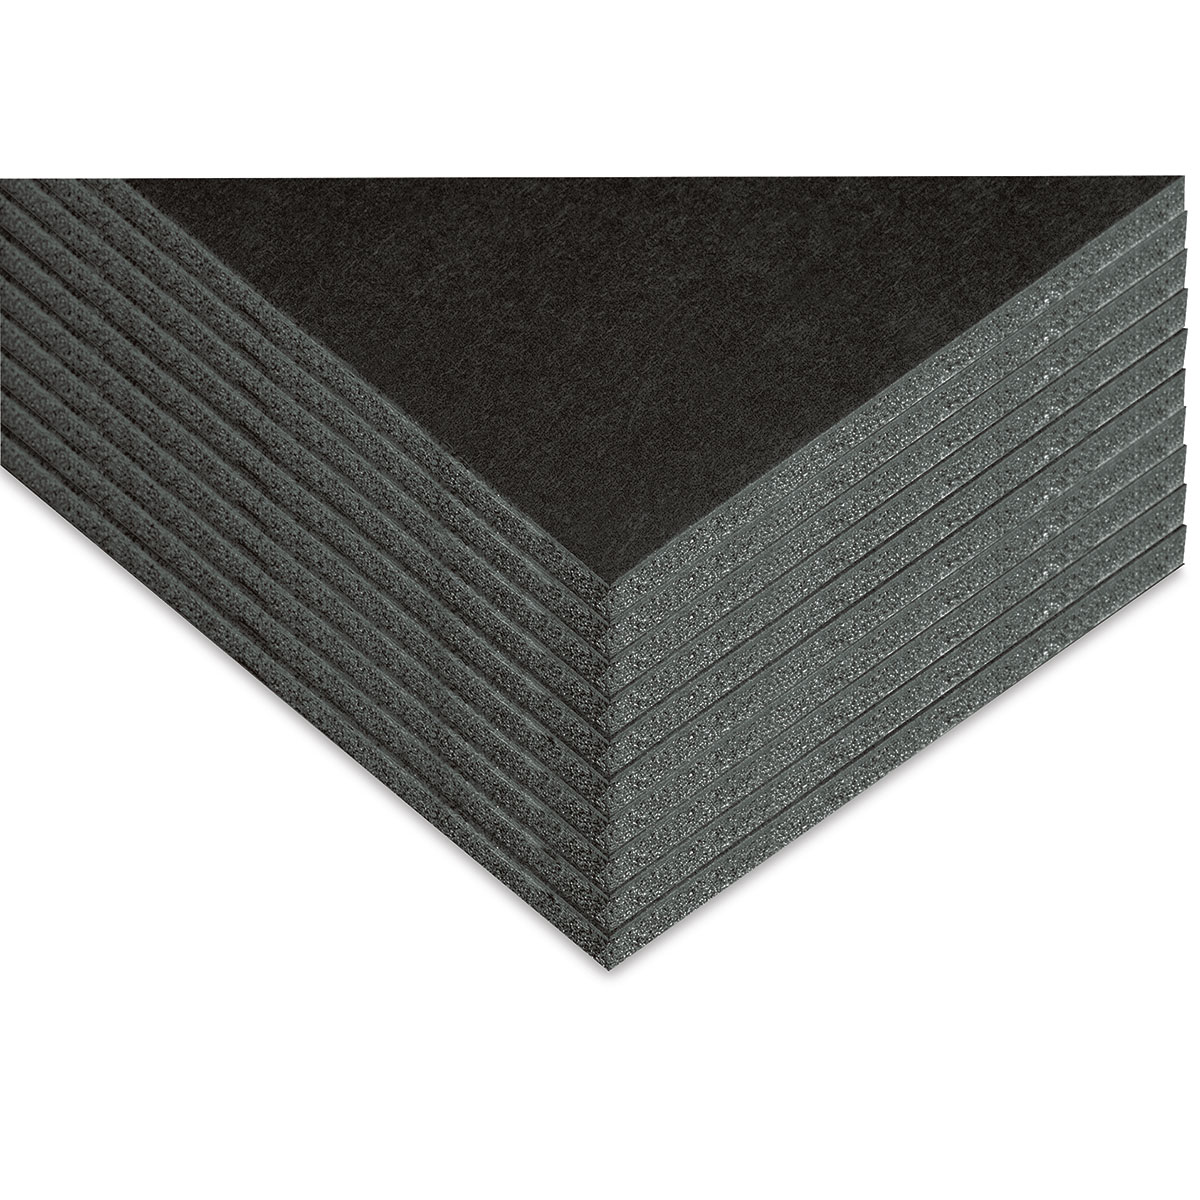 30 Packs 8 X 10 X 3/16 Inch Black Foam Board, Foam Core Backing